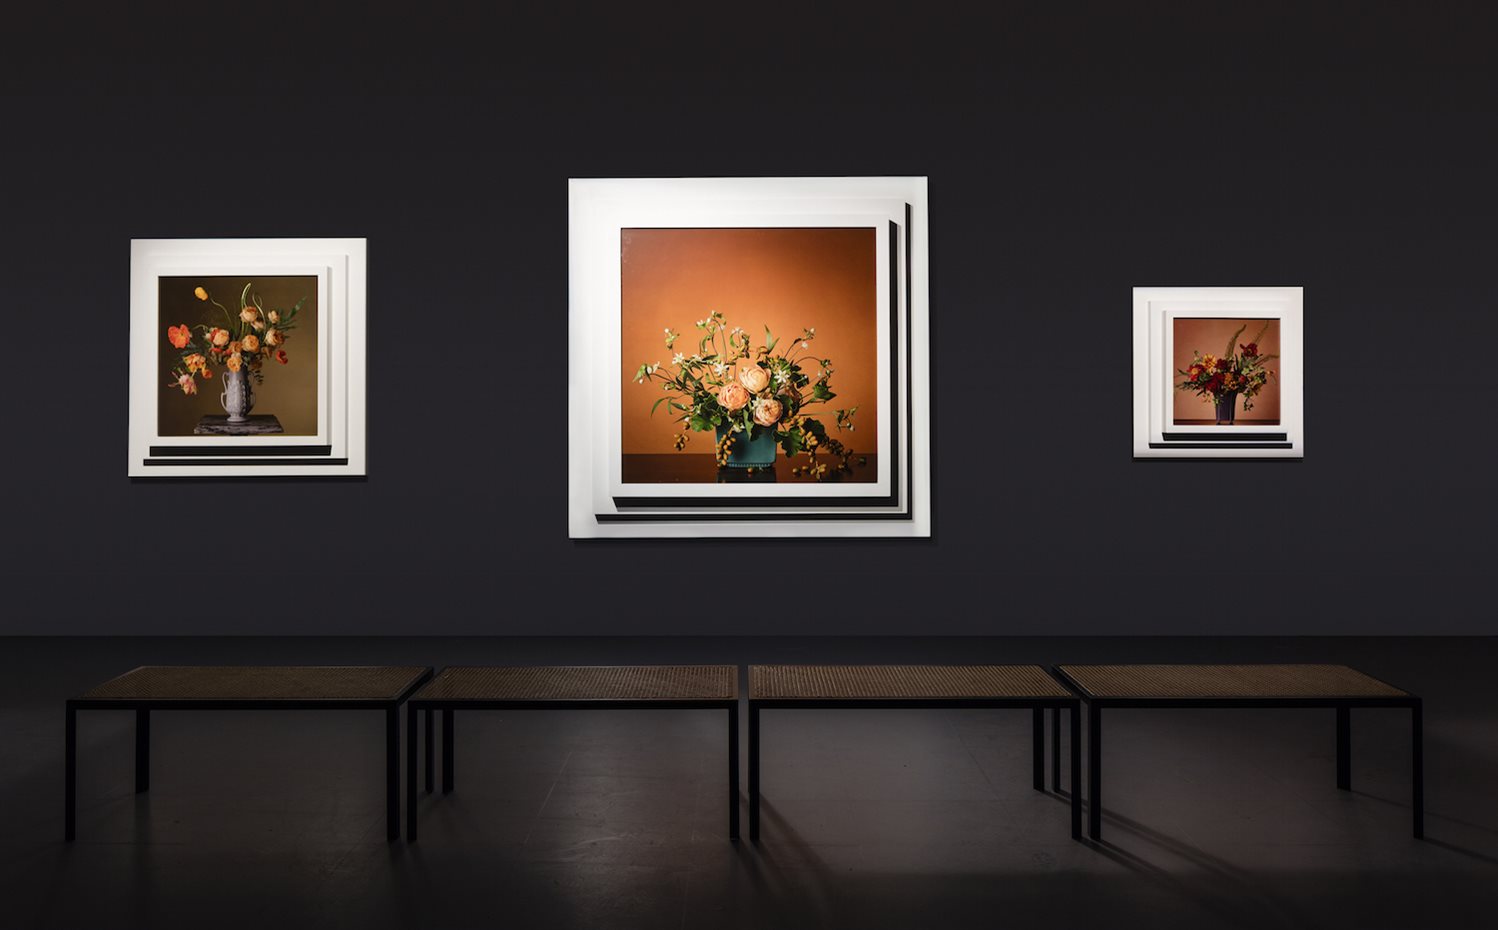 161115-Botanico-7sin DEF. Fotografías con arreglos florales obra de Steven Meisel, en la última parte de la exposición